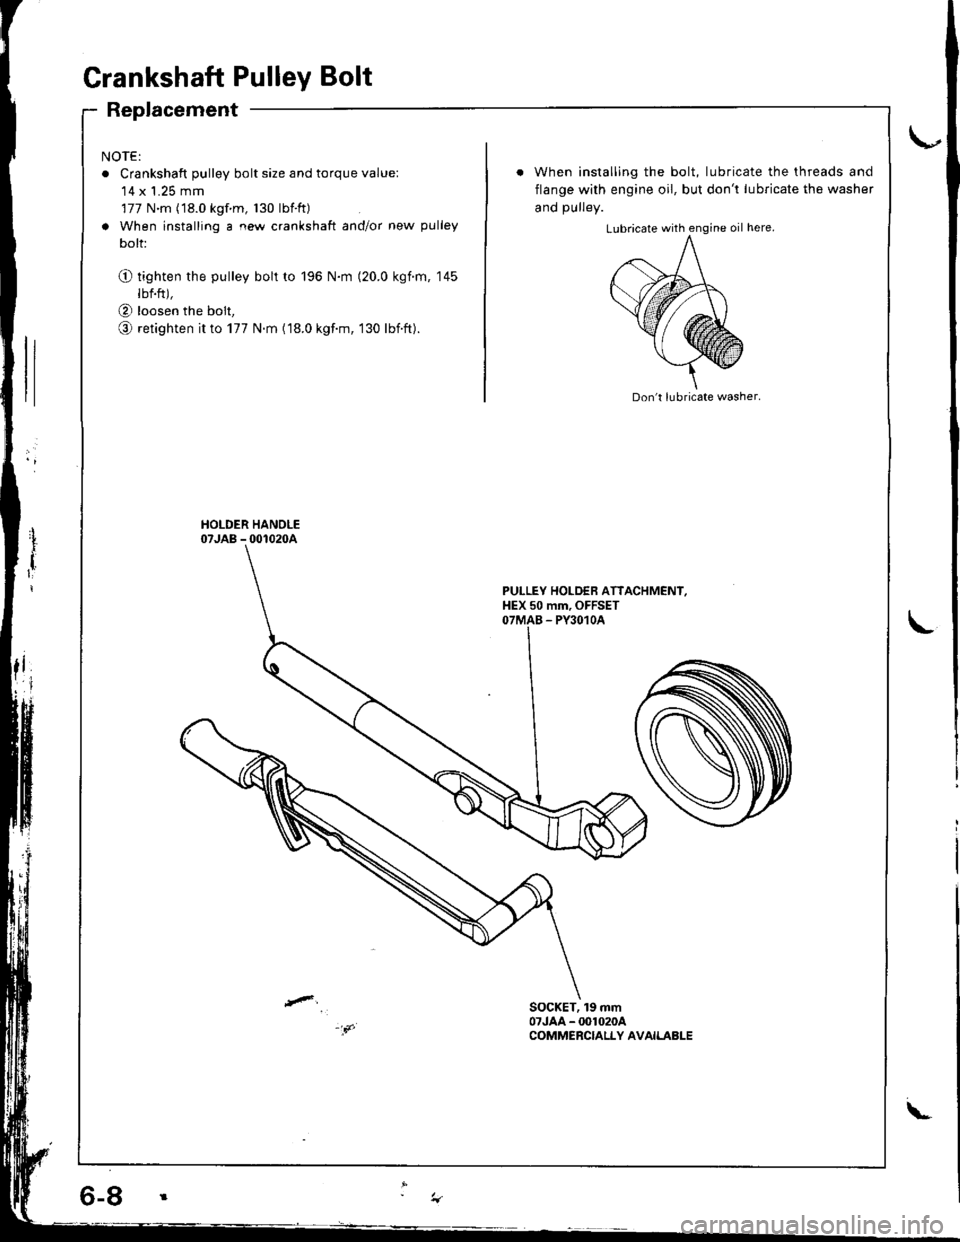 HONDA INTEGRA 1998 4.G Repair Manual Grankshaft Pulley Bolt
Replacement
NOTE:
o Crankshaft pulley bolt size and torque value:14 x 1.25 mm
177 N.m (18.0 kgf m, 130 lbtft)
a When installing a new crankshaft and/or new pulley
bolt:
O tight